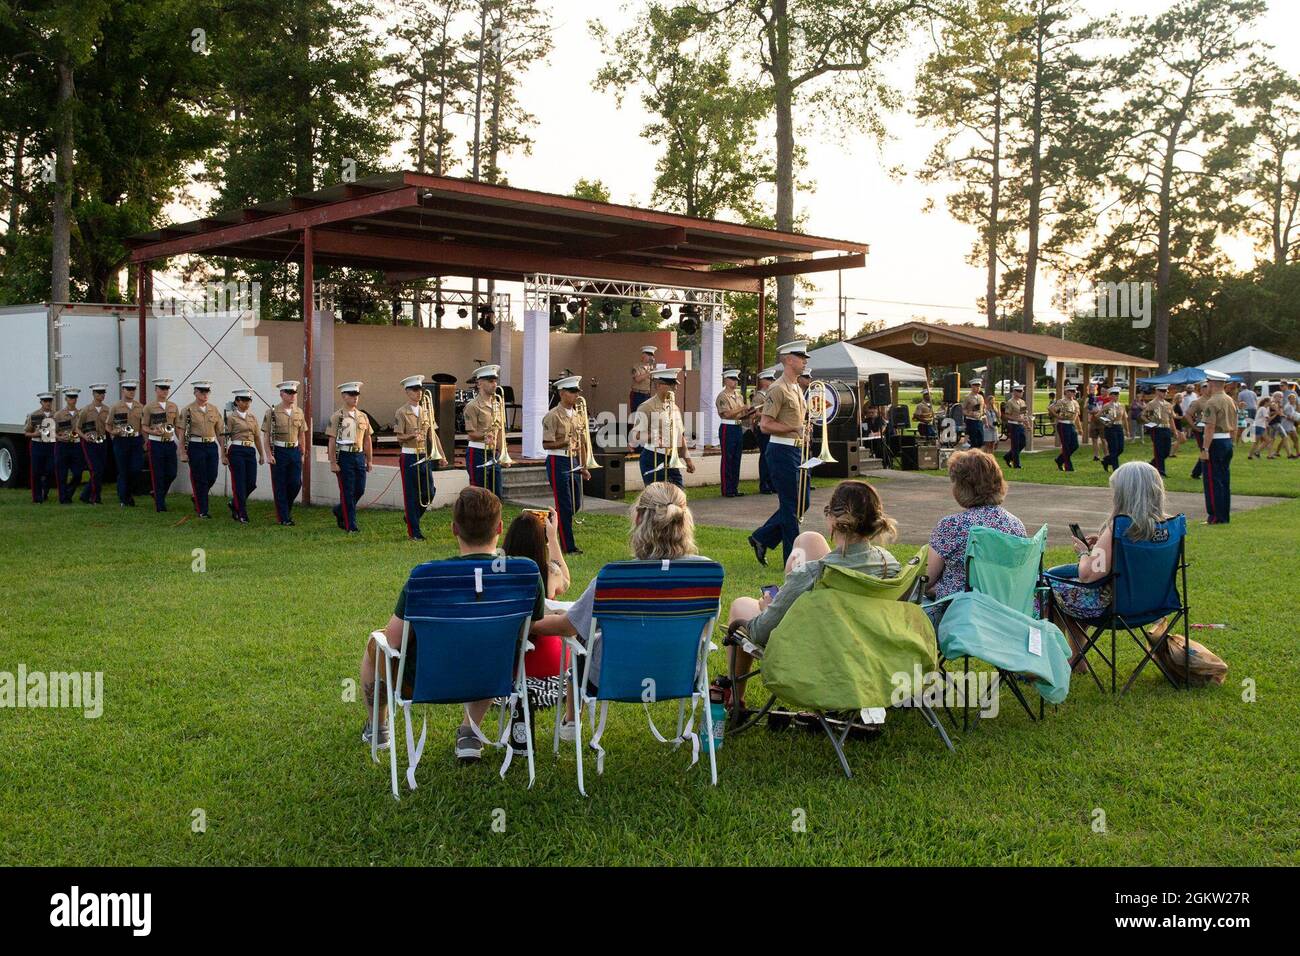 US-Marineinfanteristen, die der 2nd Marine Aircraft Wing Band zugeordnet sind, treten für die Bewohner des Großraums Havelock während eines Independence Day Konzerts im Havelock City Park, North Carolina, am 3. Juli 2021 auf. Das Konzert bot den Marines die Möglichkeit, sich mit der Gemeinschaft zu engagieren. Stockfoto